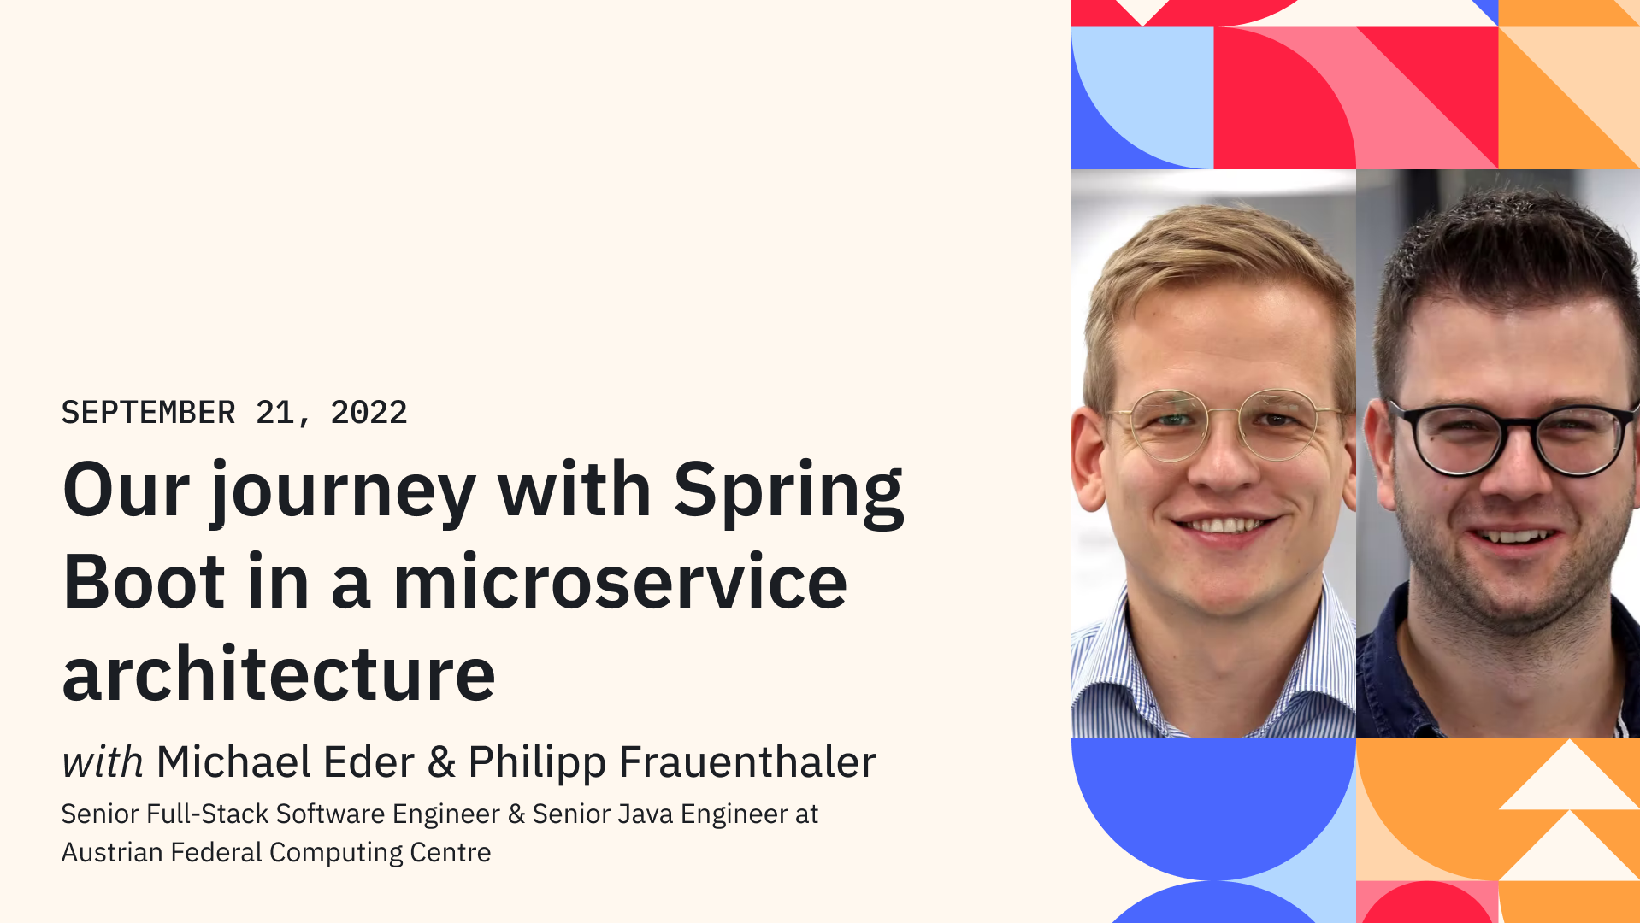 Our journey with Spring Boot in a microservice architecture, Sujet mit BRZ Mitarbeitern Michael Eder und Philipp Freudenthaler